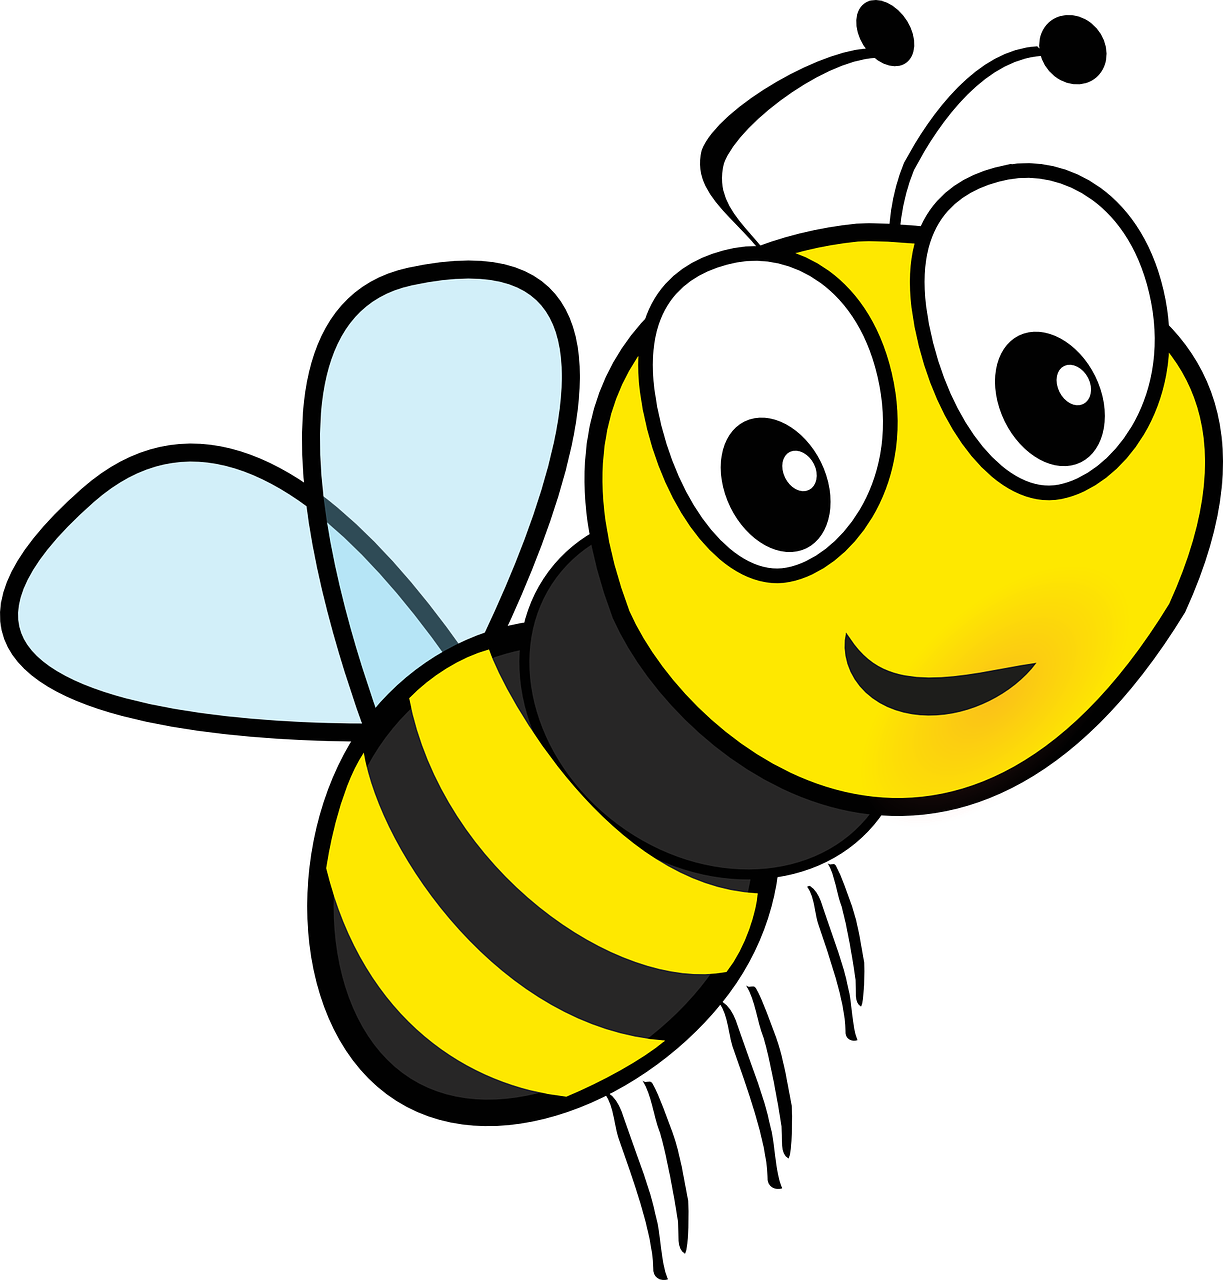 Cartoon Bees PNG HD - 121850